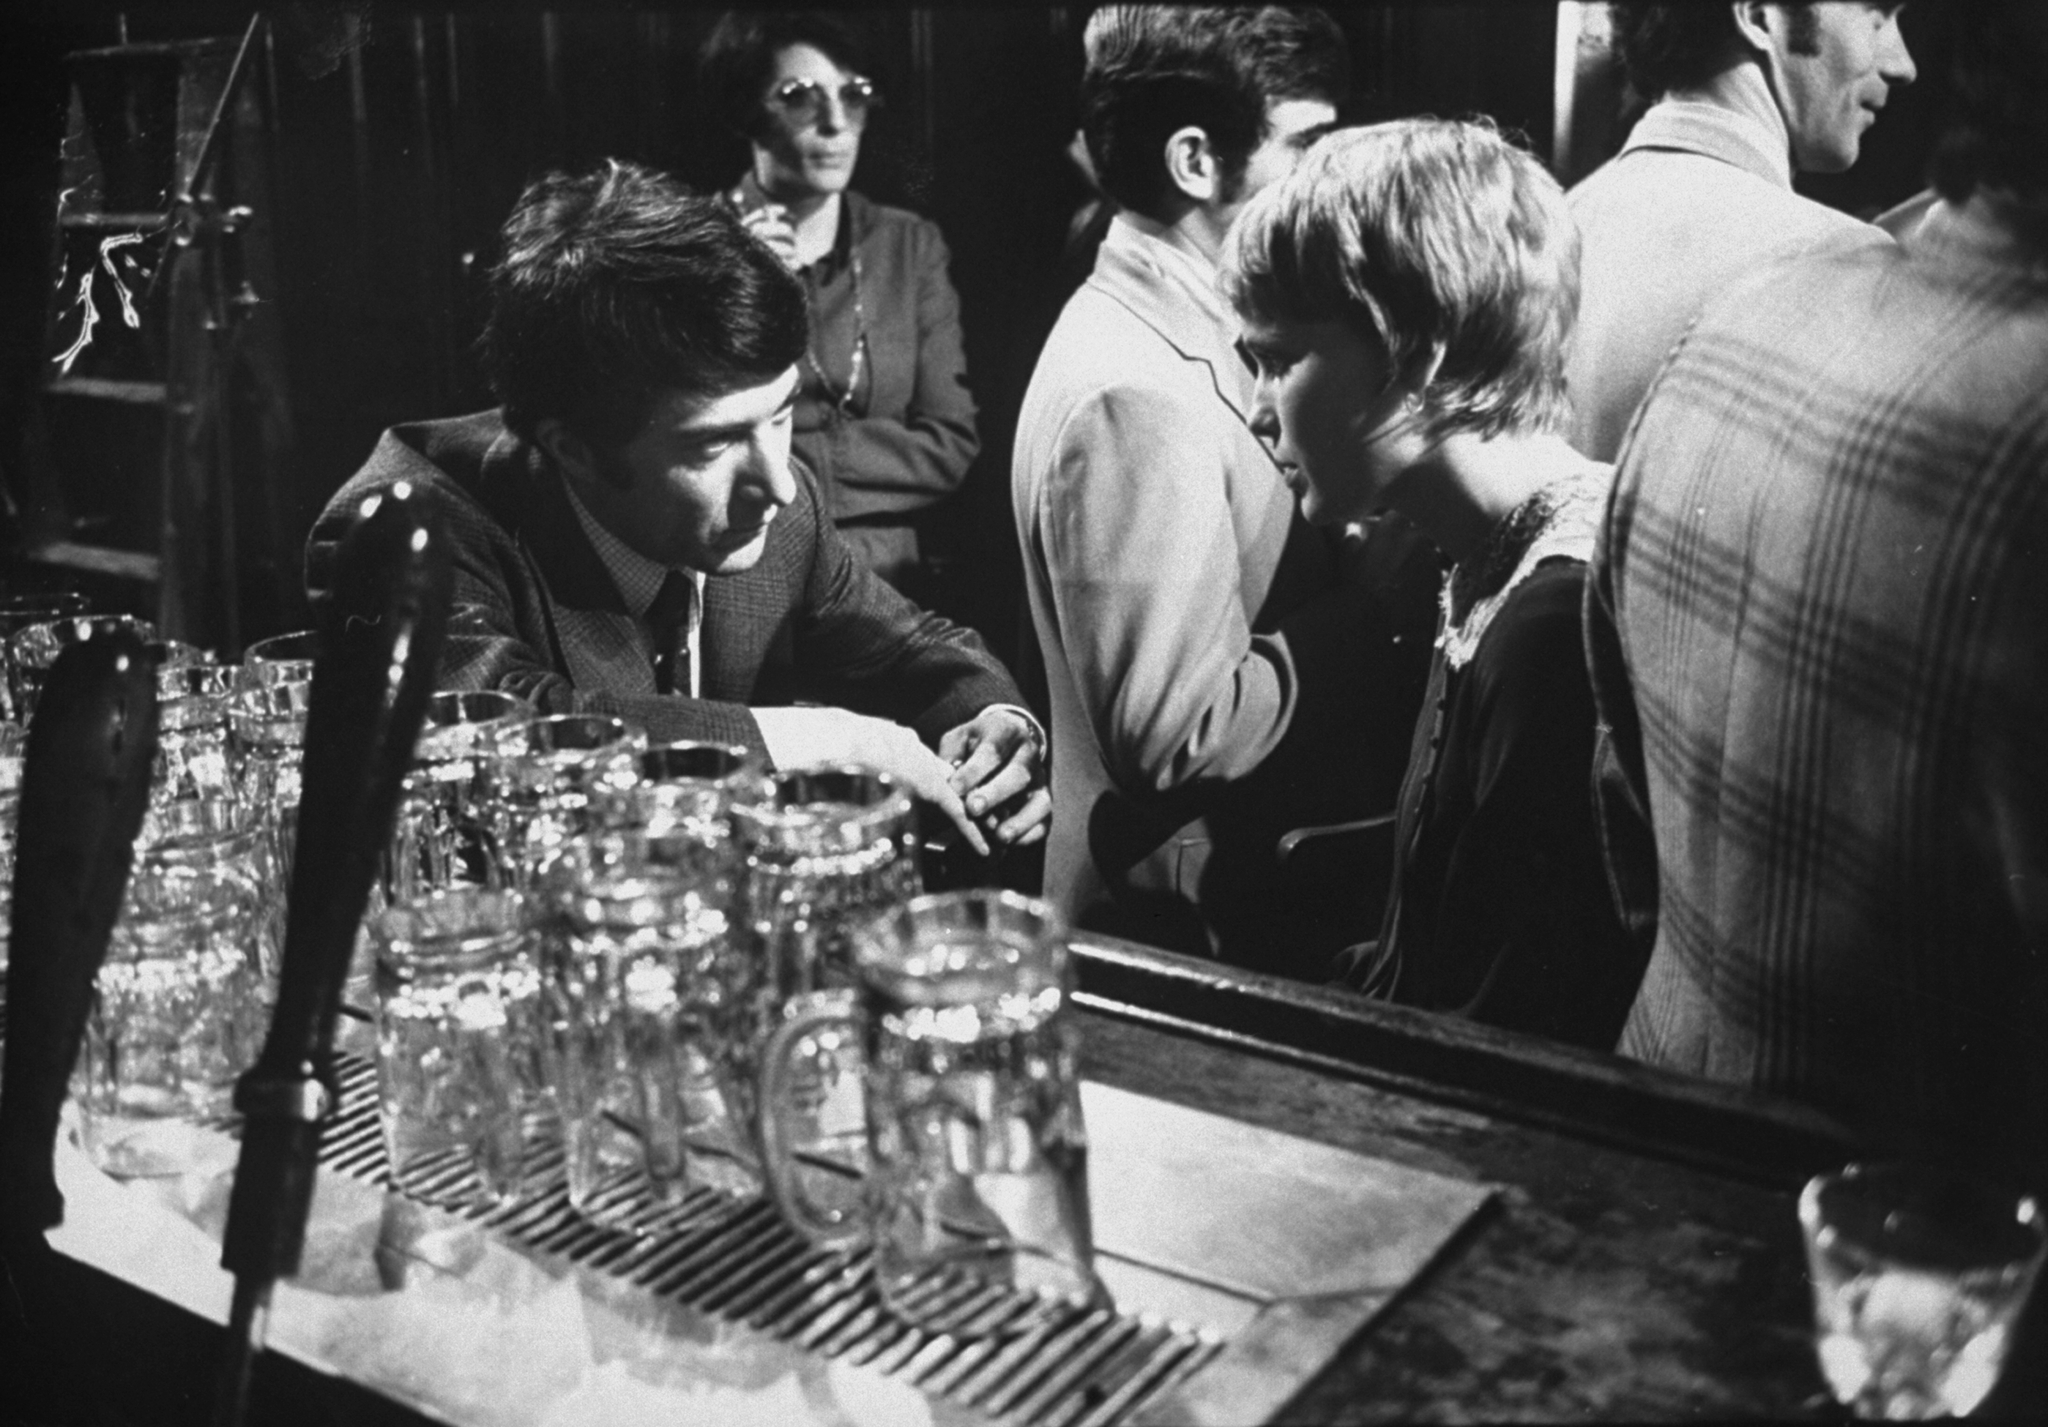 Still of Dustin Hoffman and Mia Farrow in John and Mary (1969)